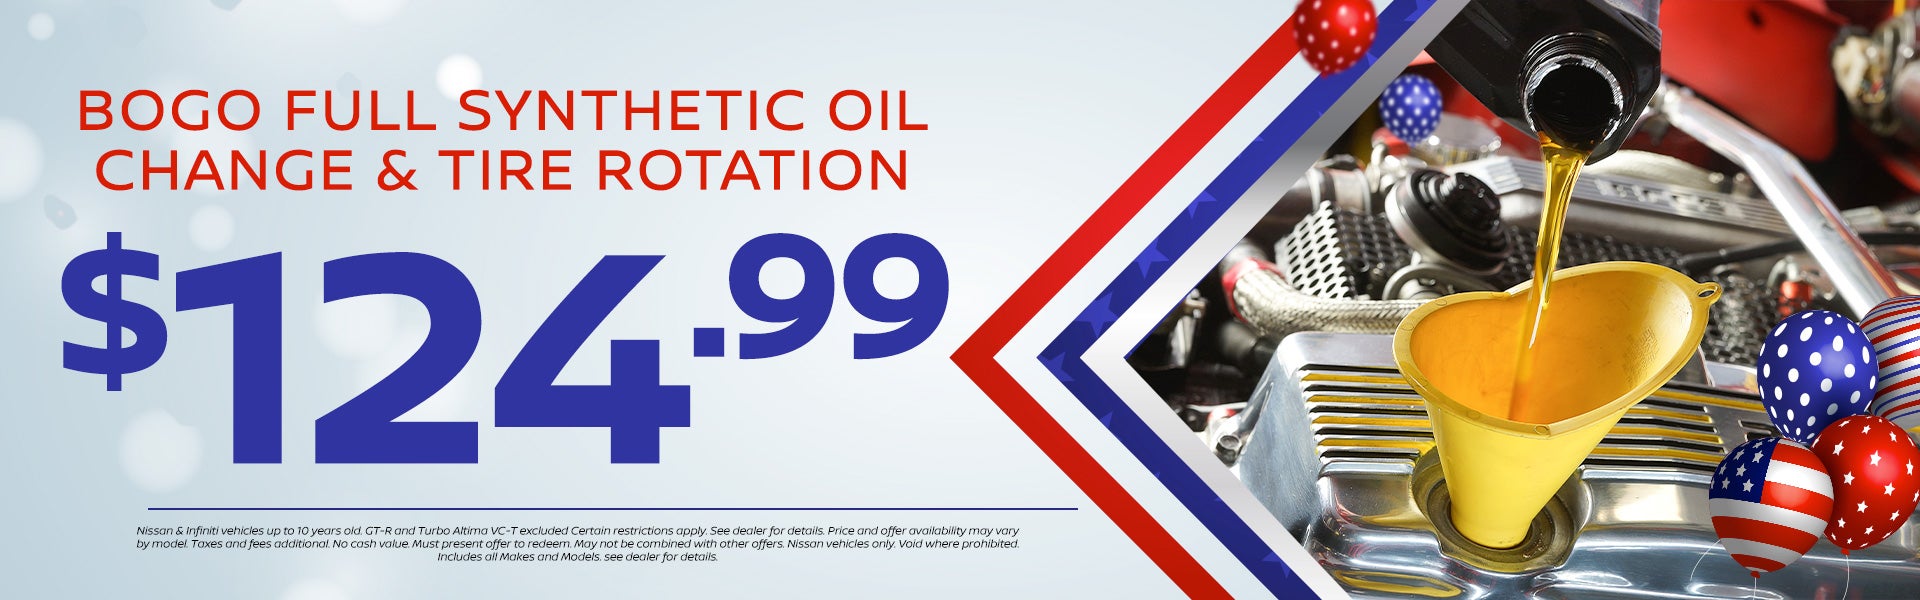 BOGO Full Synthetic Oil Change & Tire Rotation $124.99 